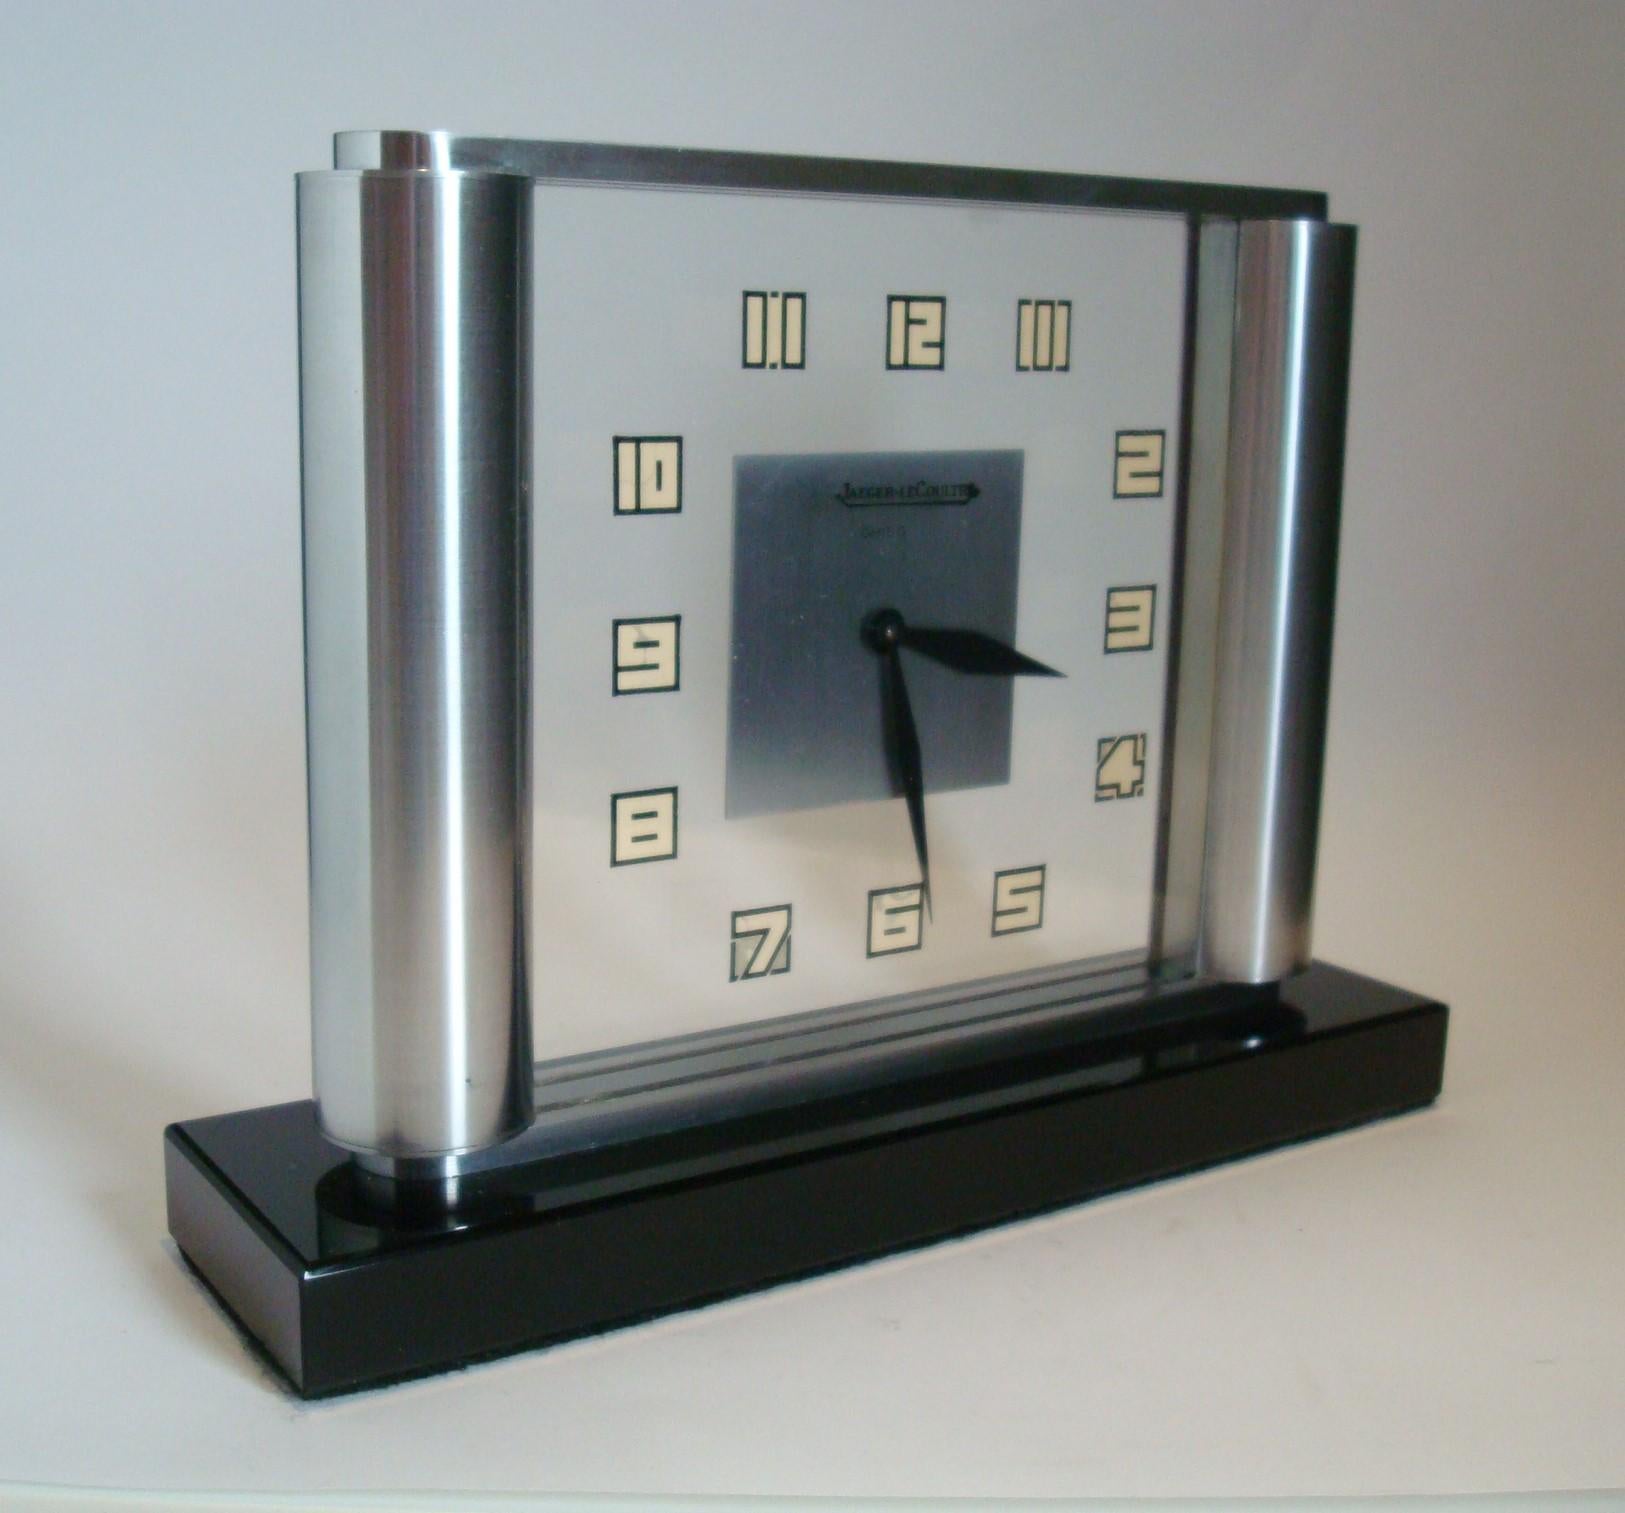 Horloge de table / de bureau / de cheminée Art Déco. Cette beauté Art déco a été entièrement révisée par un horloger et vous est donc proposée en parfait état de marche.
Histoire
Jaeger-LeCoultre (prononciation française) est une manufacture